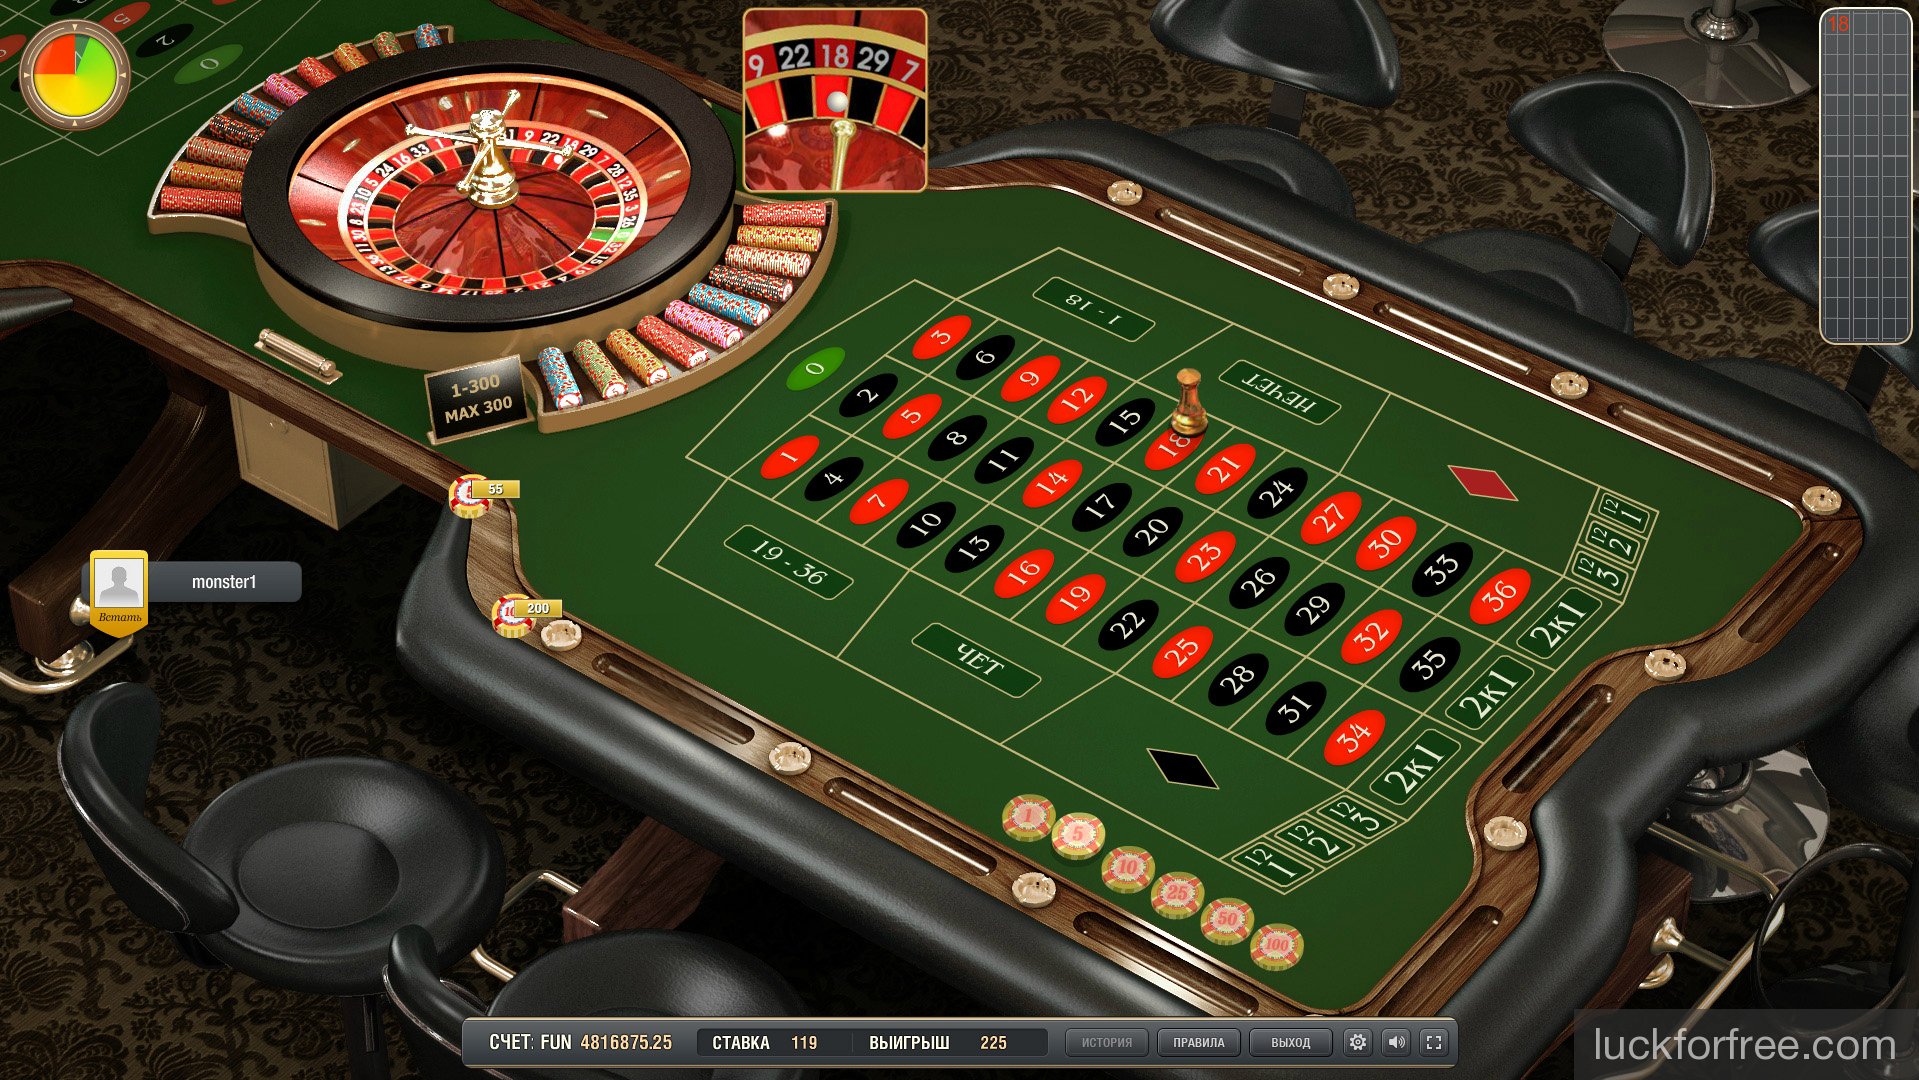 Jocuri de noroc online cu sloturi